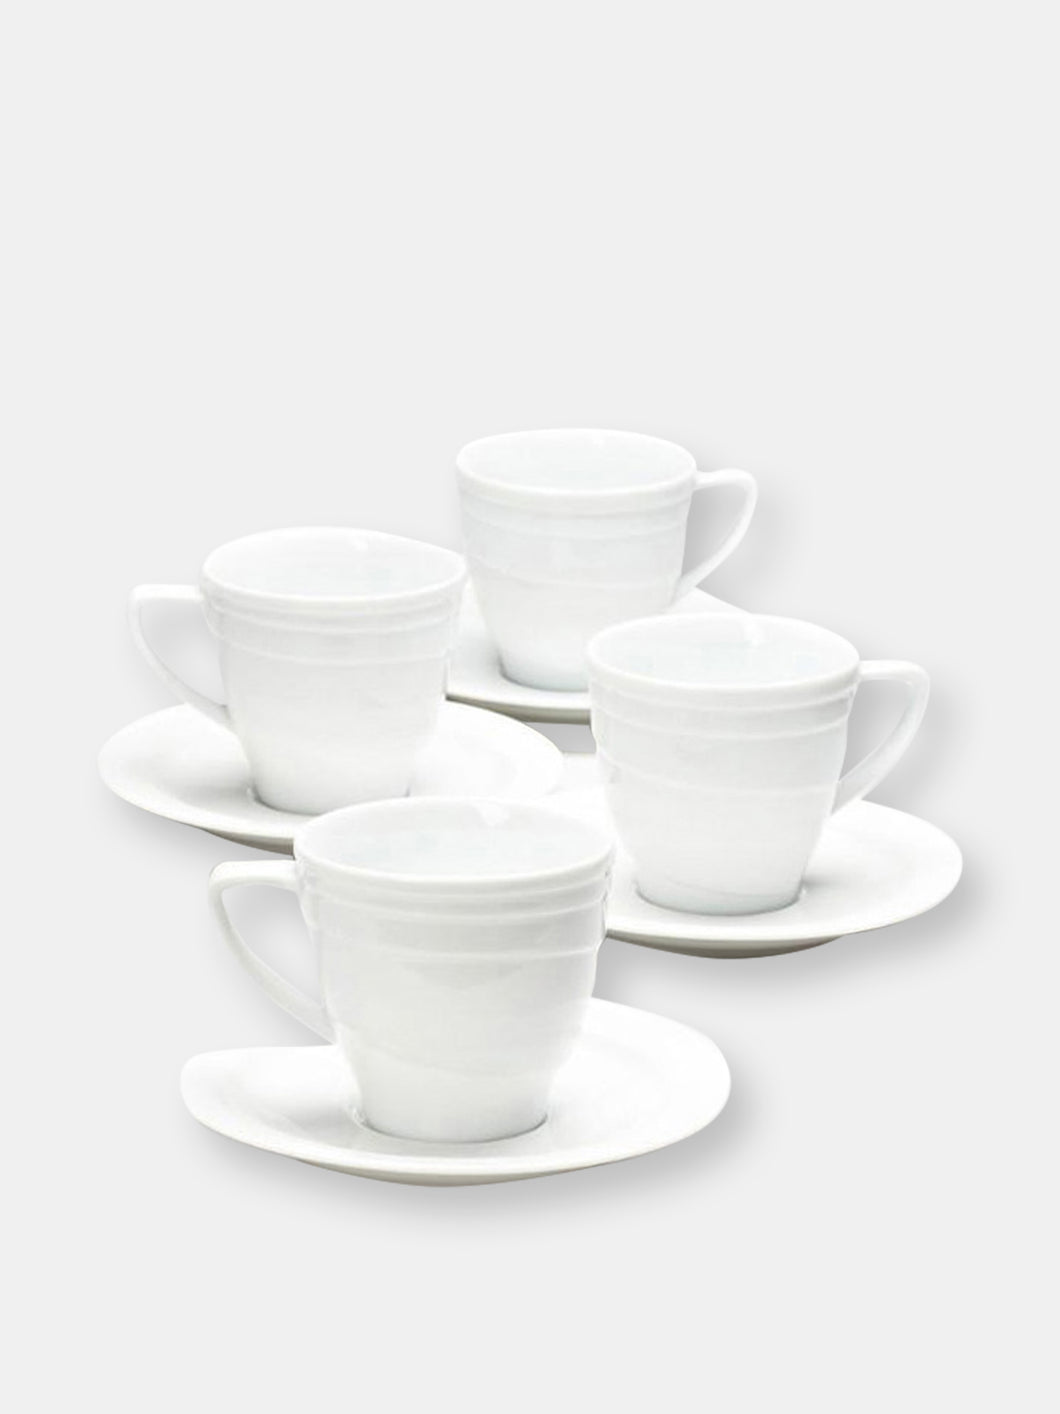 BergHOFF Elan 8.6oz Porcelain Tea Cup and Saucer, Set of 4